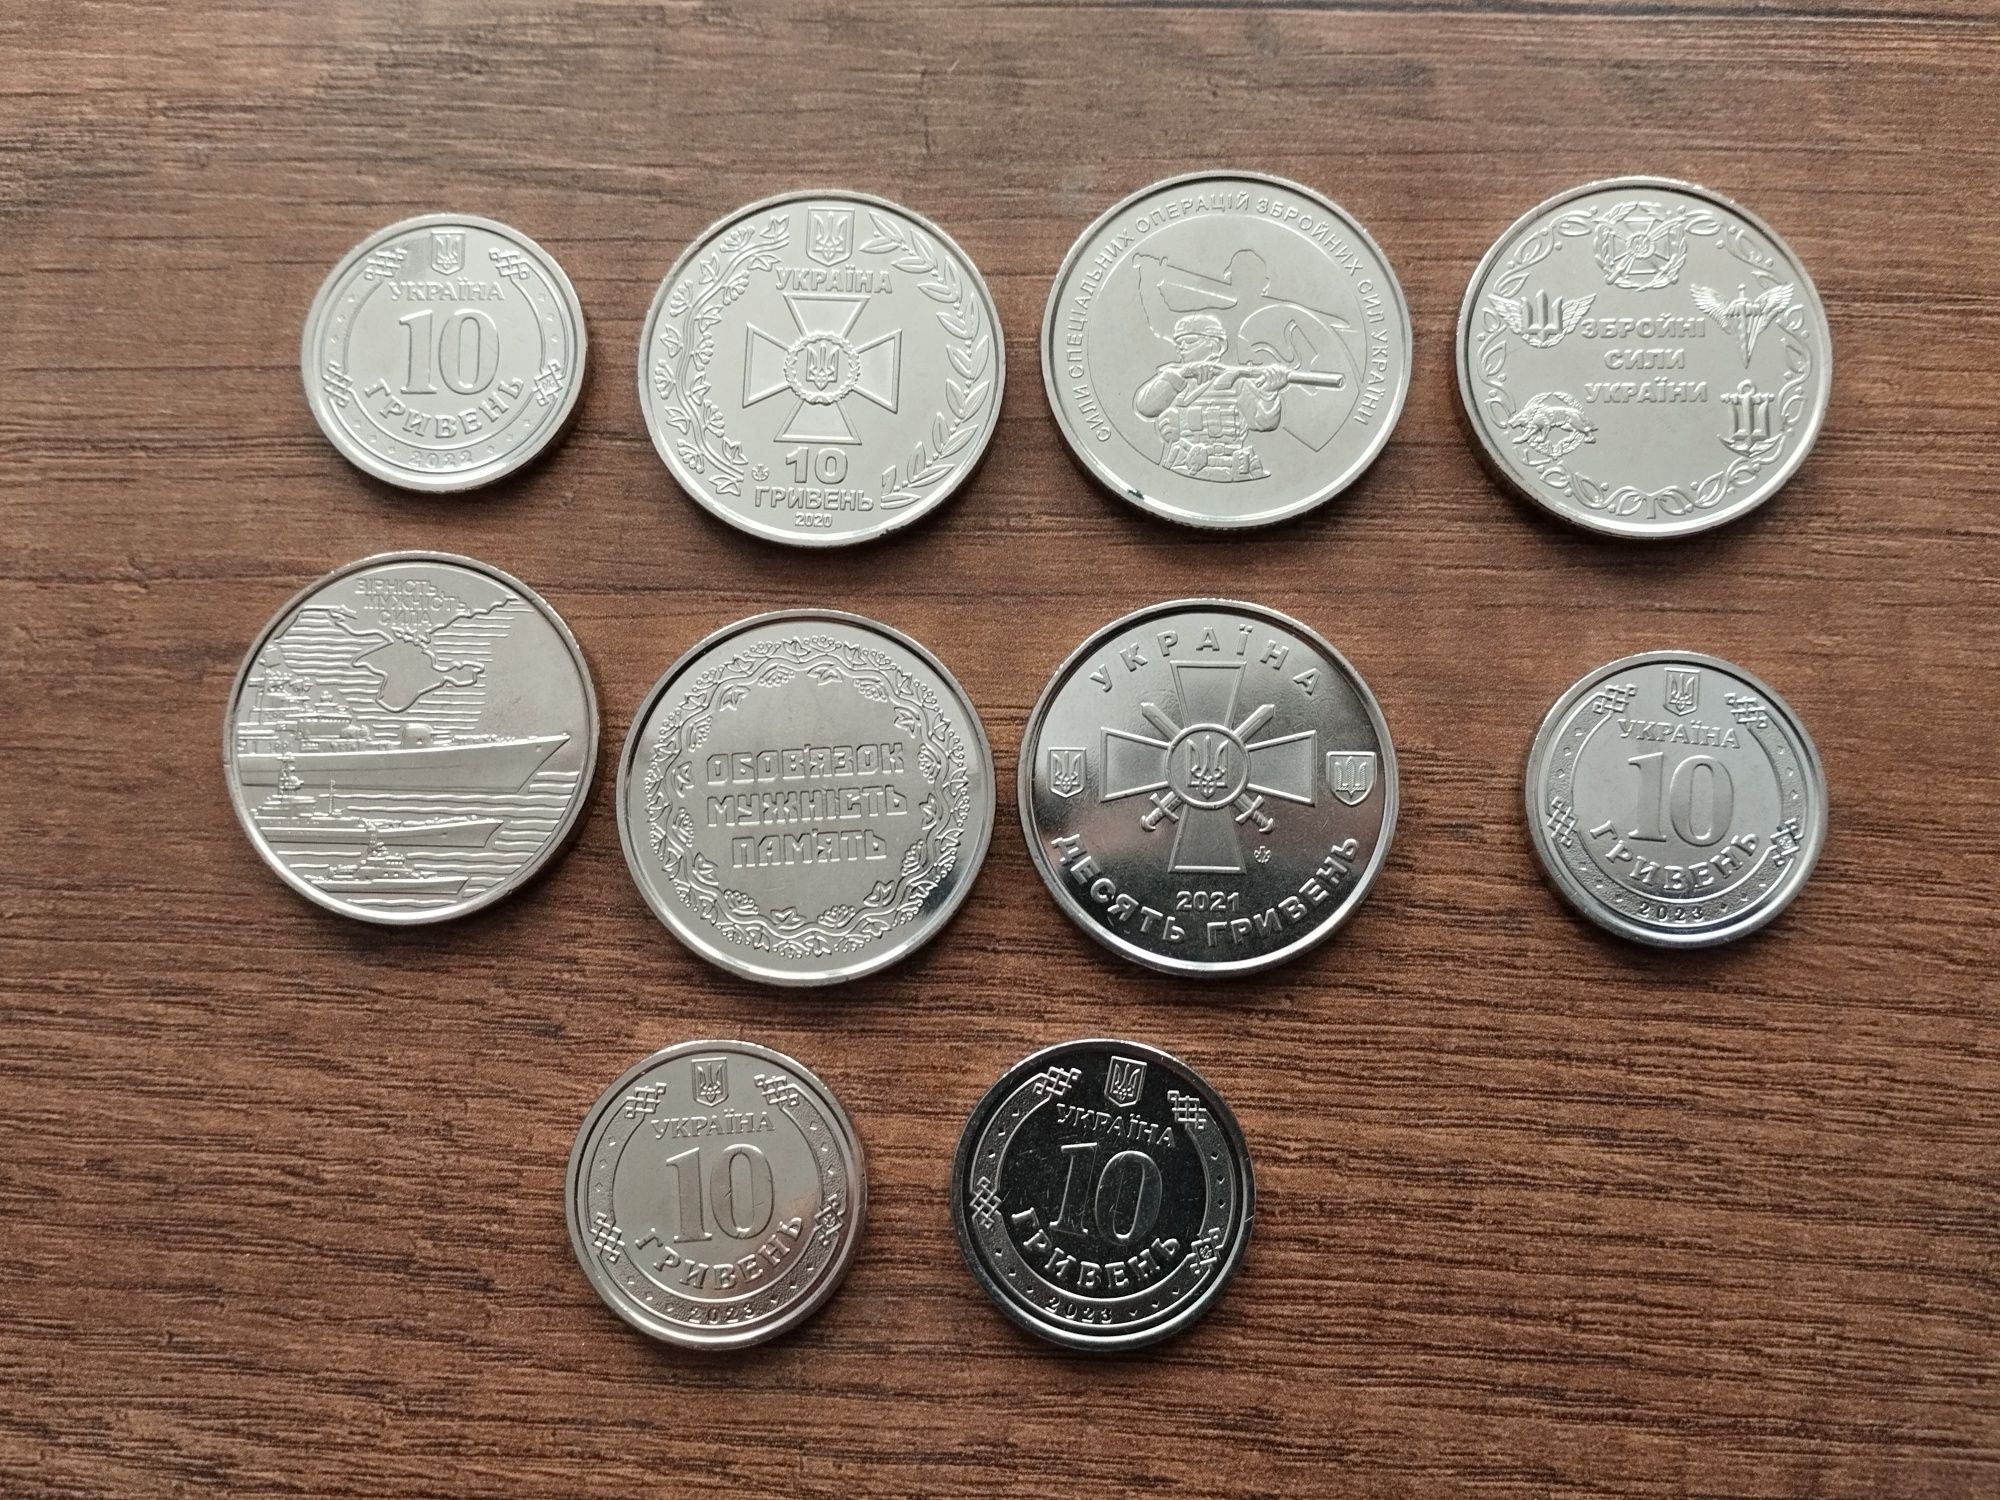 Памятные монеты 10 гривен силы спец операций и другие